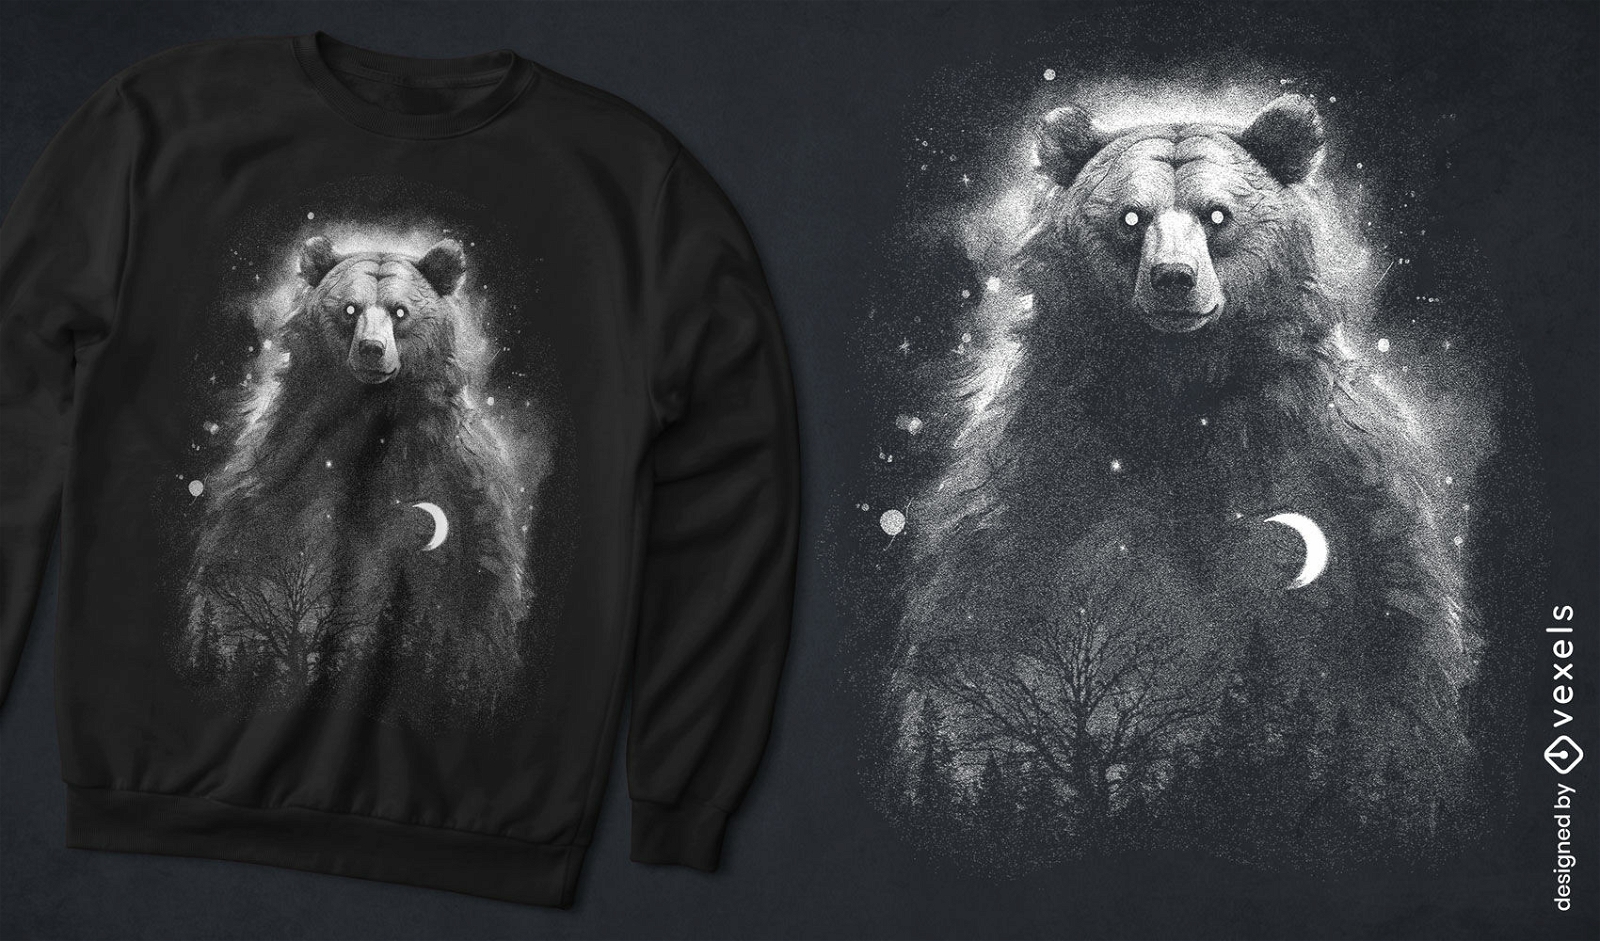 Mystical bear constellation t-shirt design